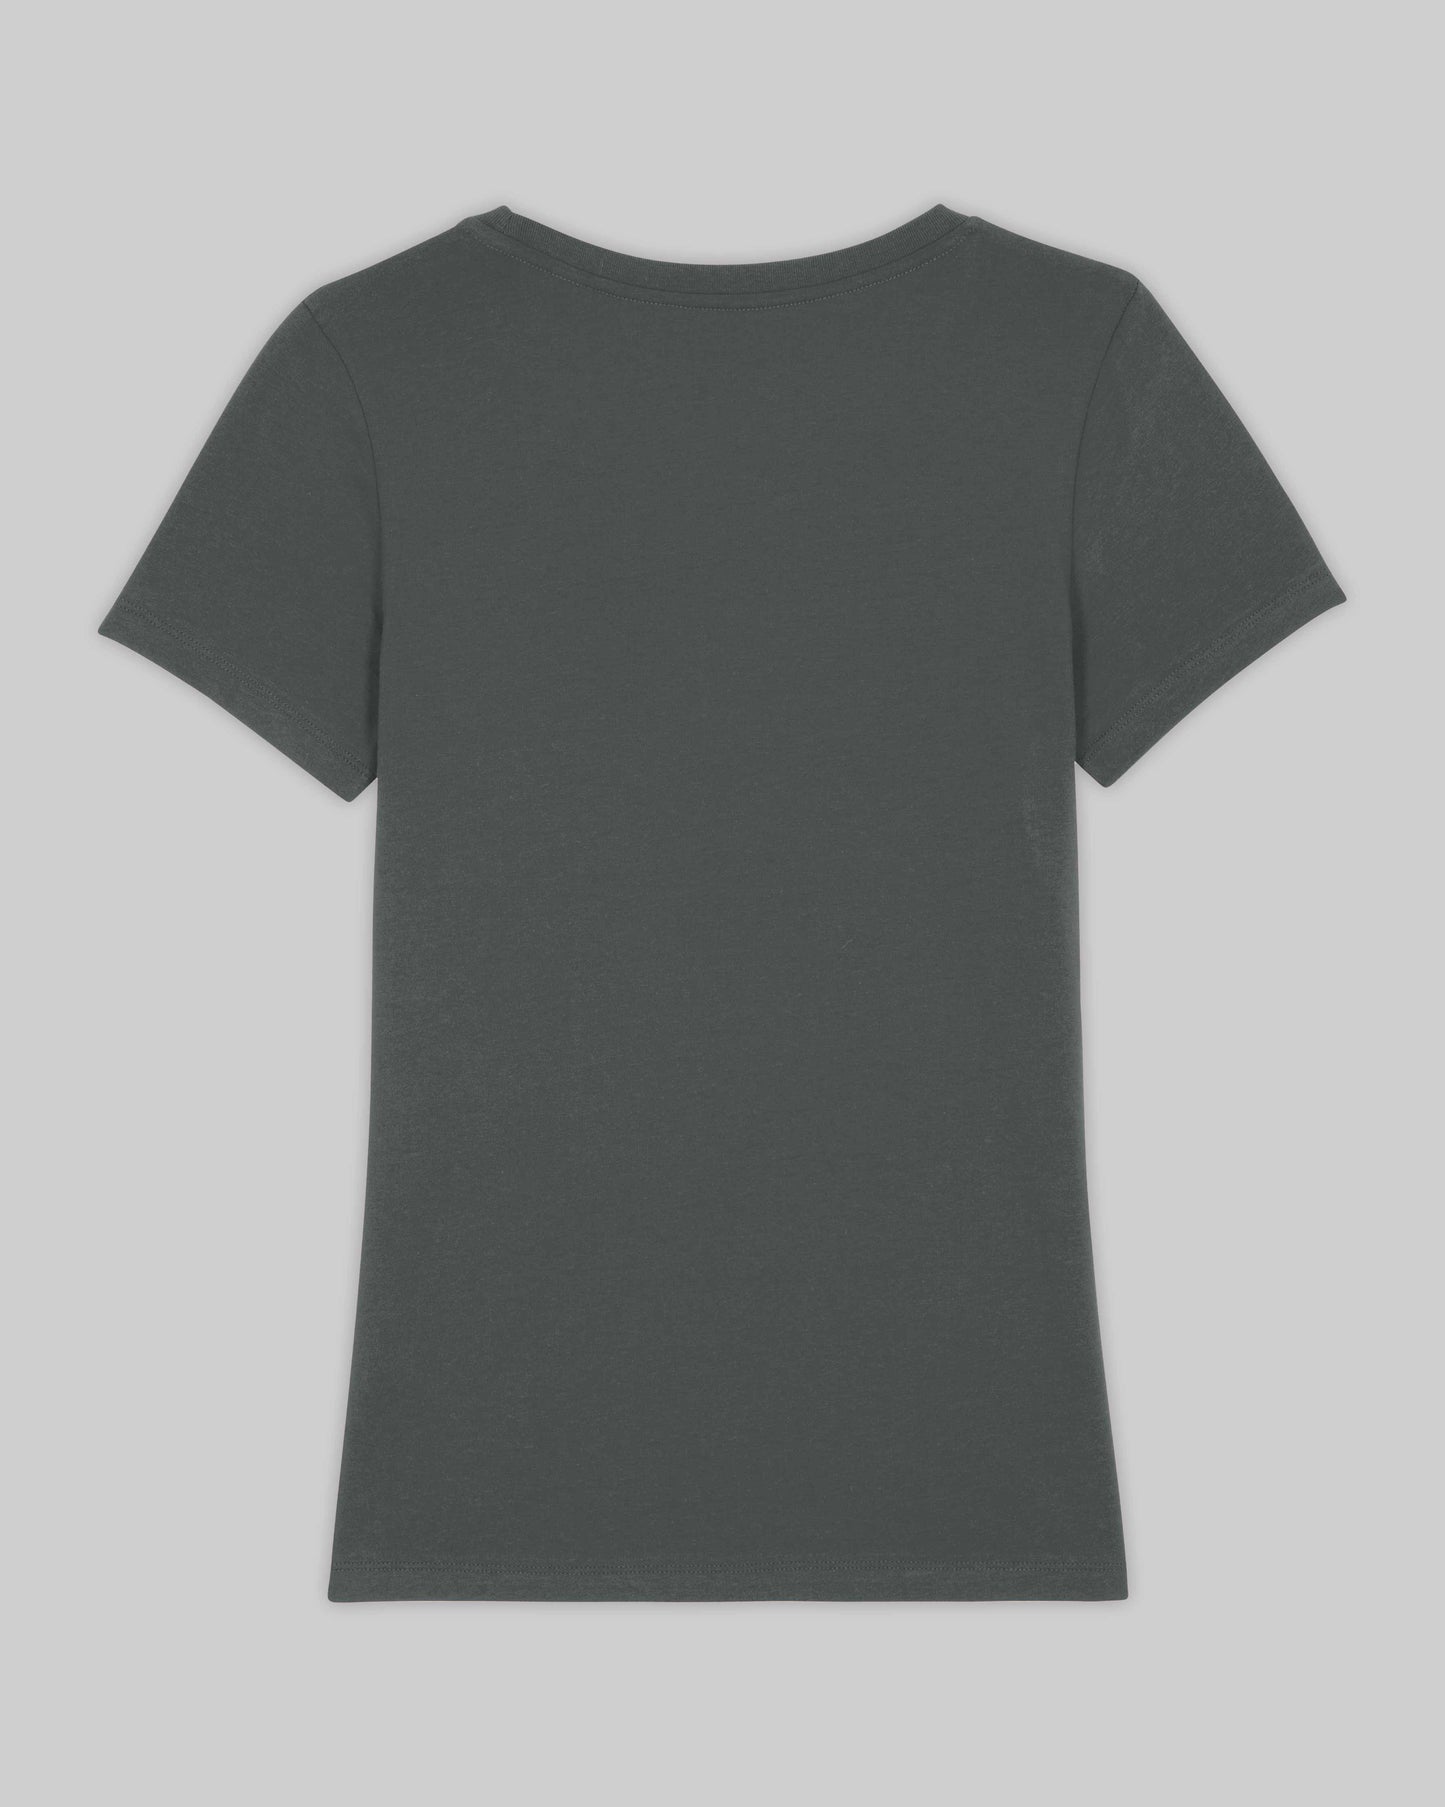 EINHORST® Organic Shirt tailliert in "Anthracite" mit dem Motiv "s-ally Regenbogen" in der Kombination weißer Regenbogen mit weißer Schrift, Bild von Shirt von hinten